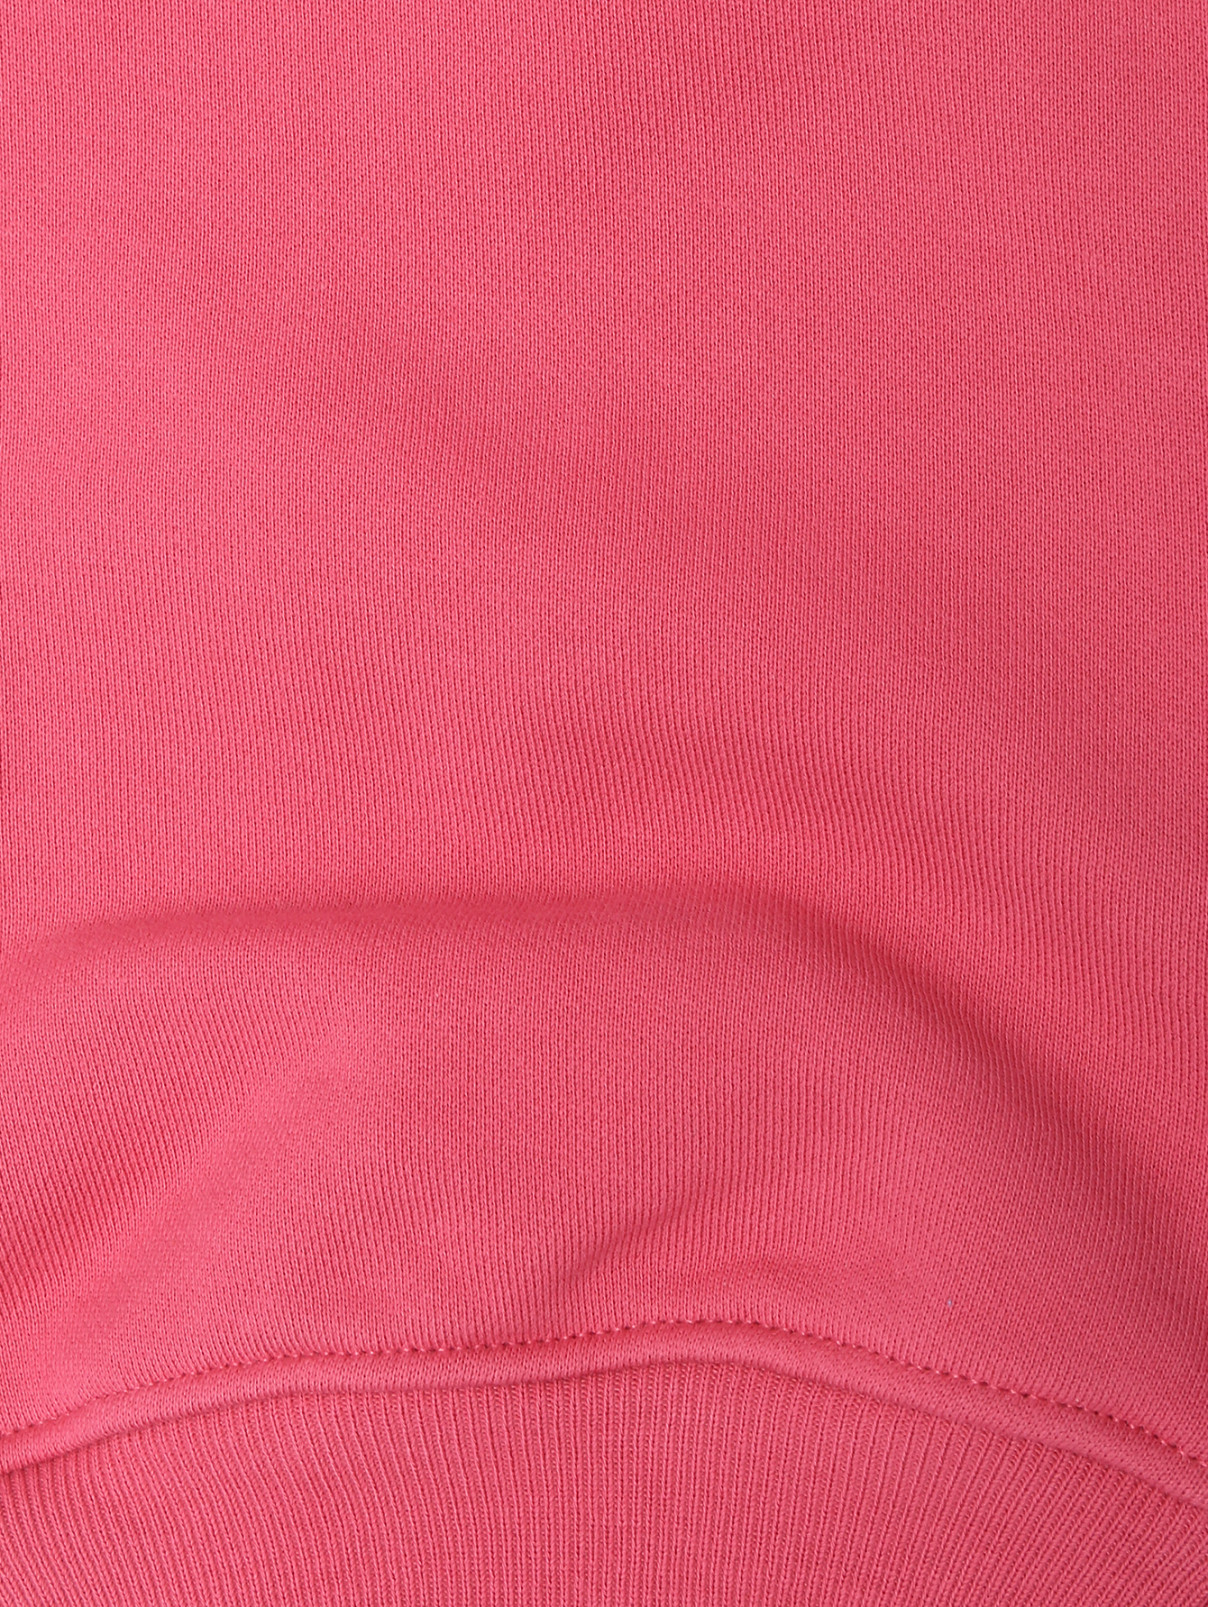 Трикотажные брюки с принтом Moschino  –  Деталь1  – Цвет:  Розовый